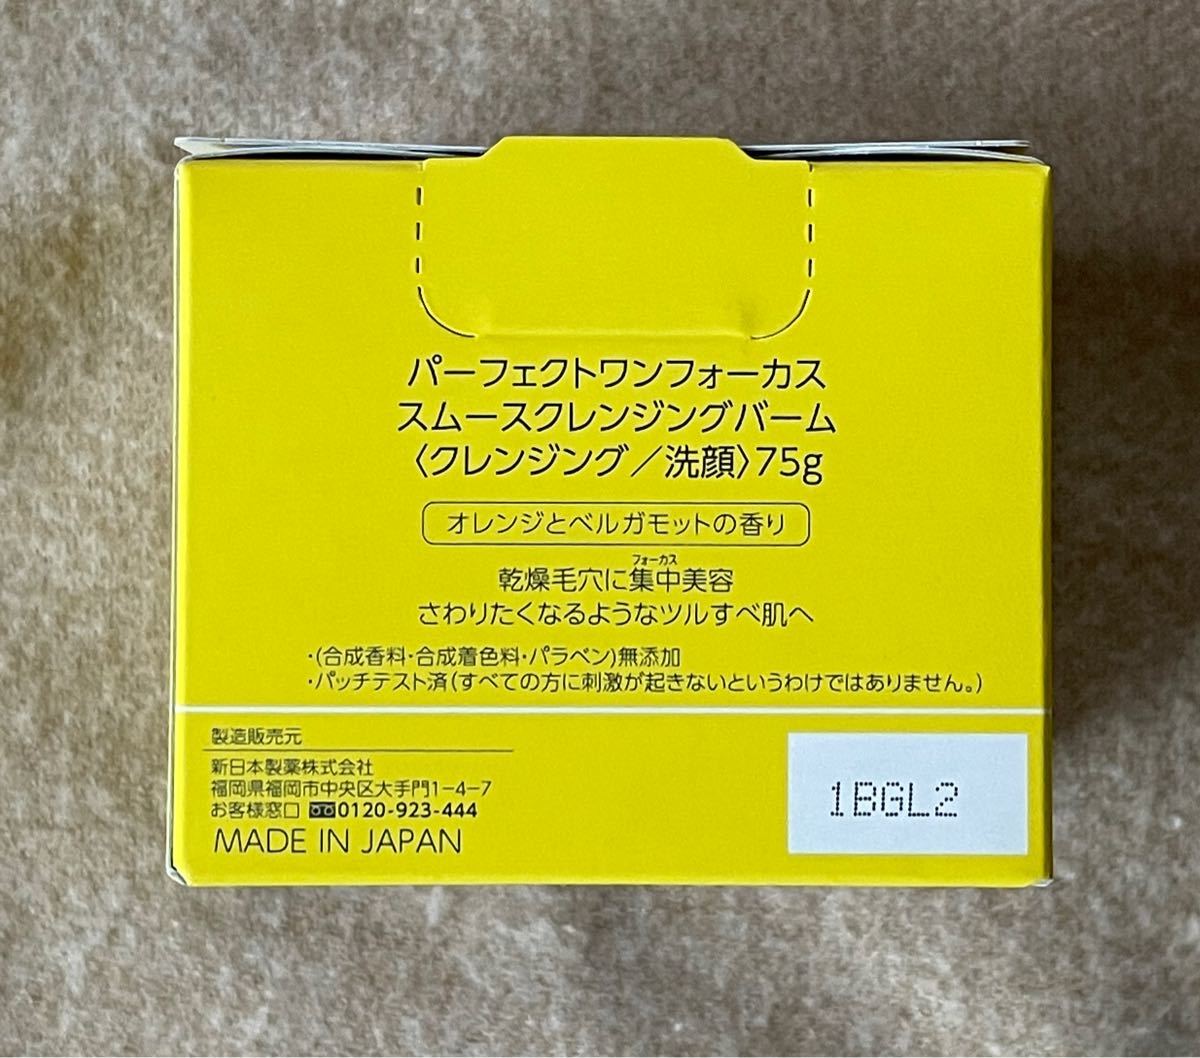  新日本製薬 パーフェクトワンフォーカス スムースクレンジングバーム 75g